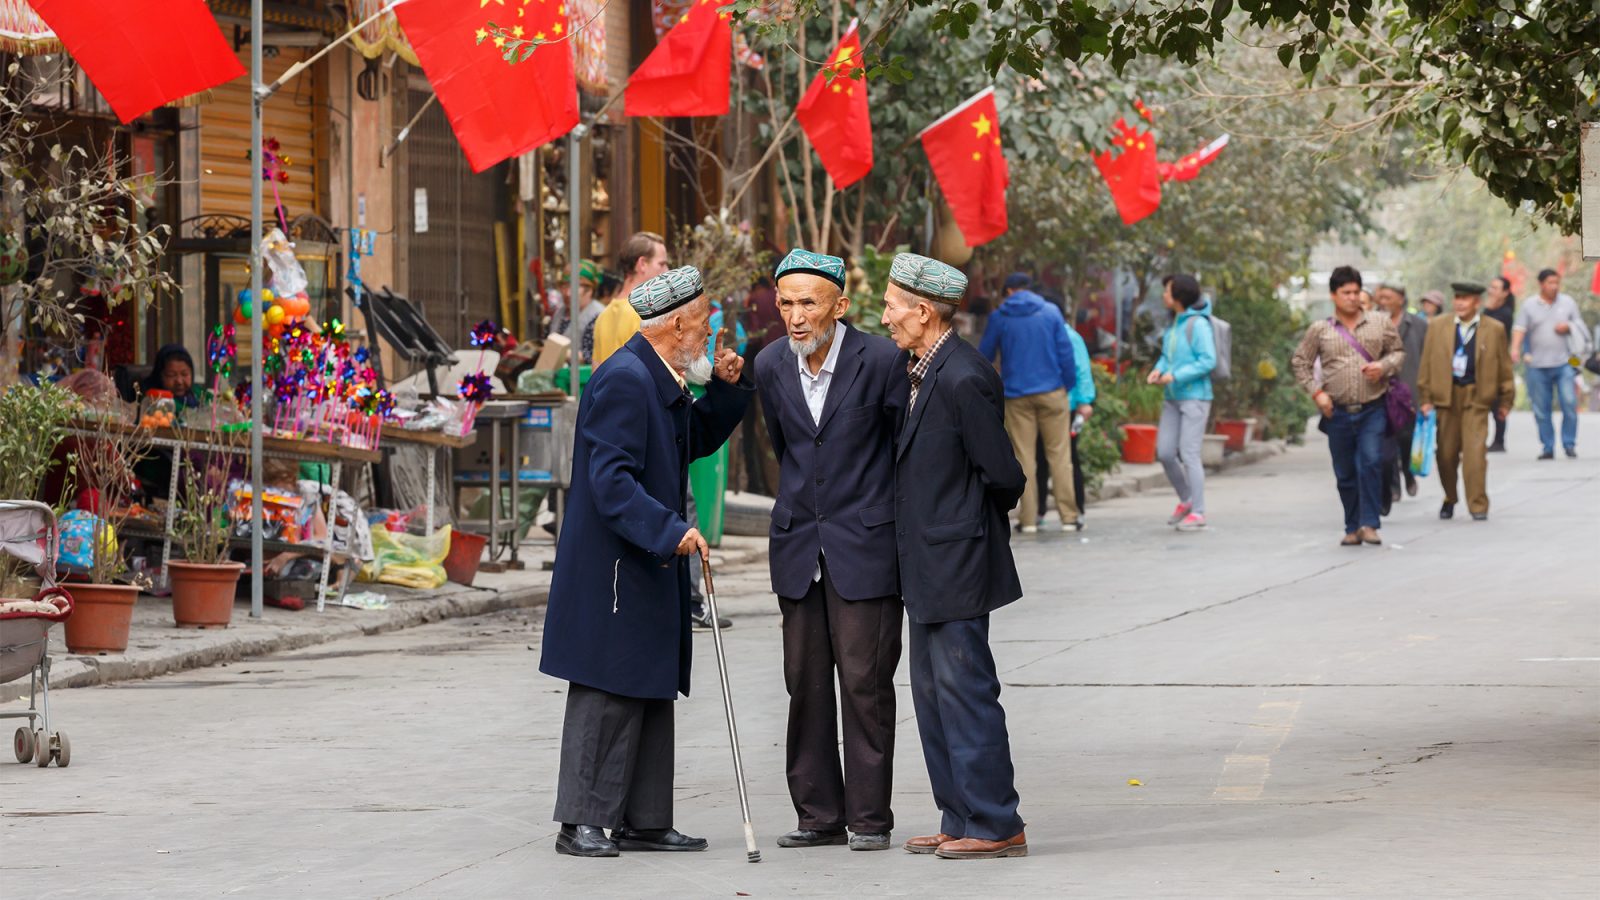 3 men talking in the street